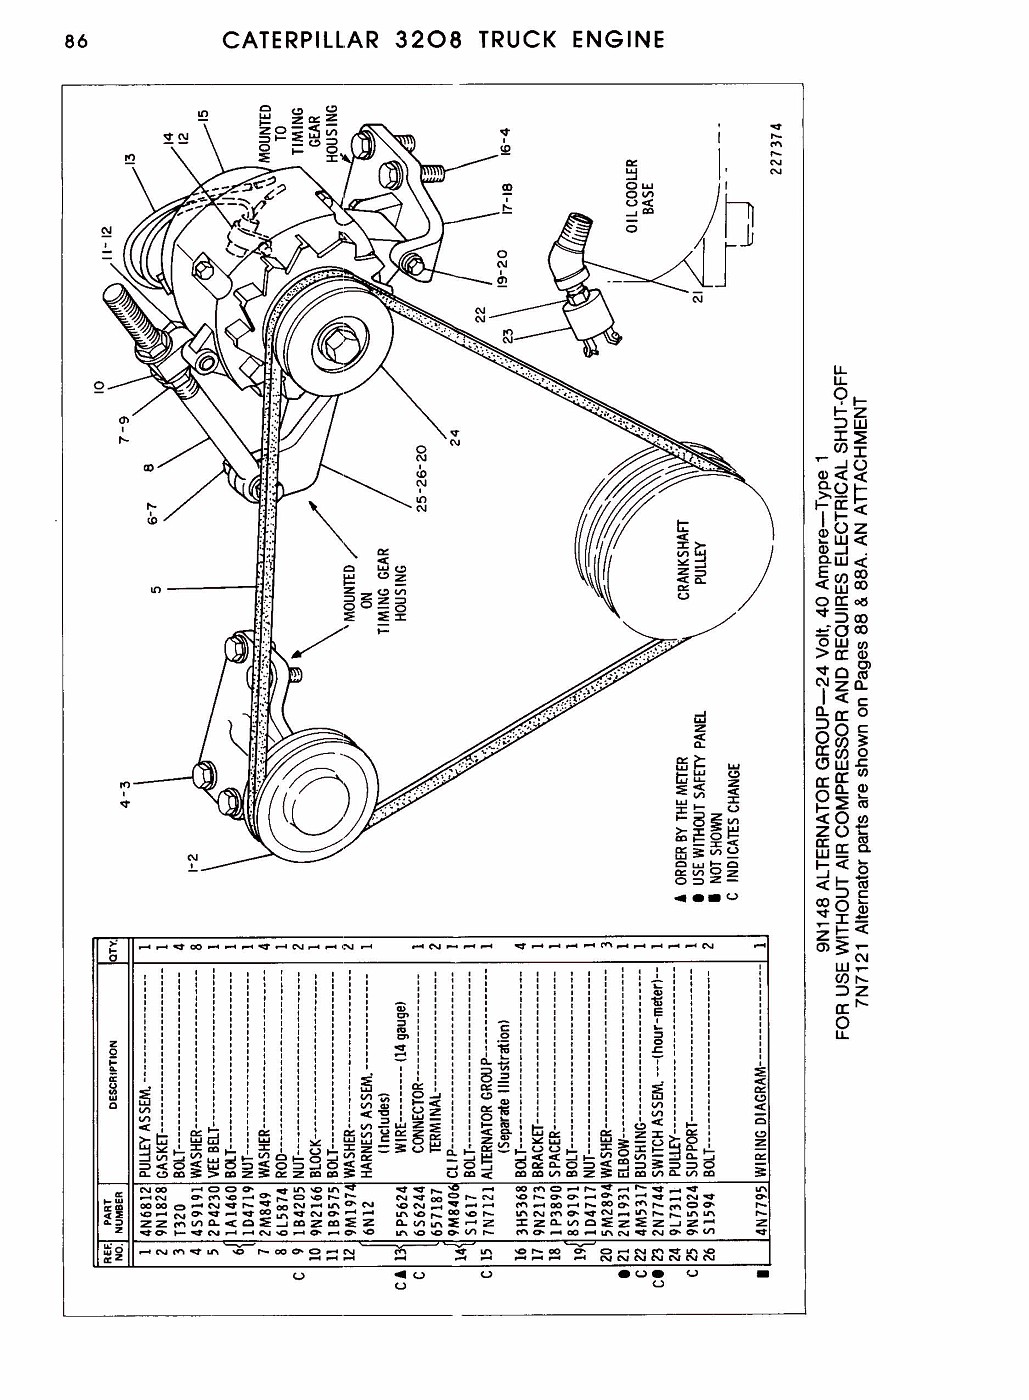 Wiring Diagram Info: 20 3208 Cat Engine Parts Diagram